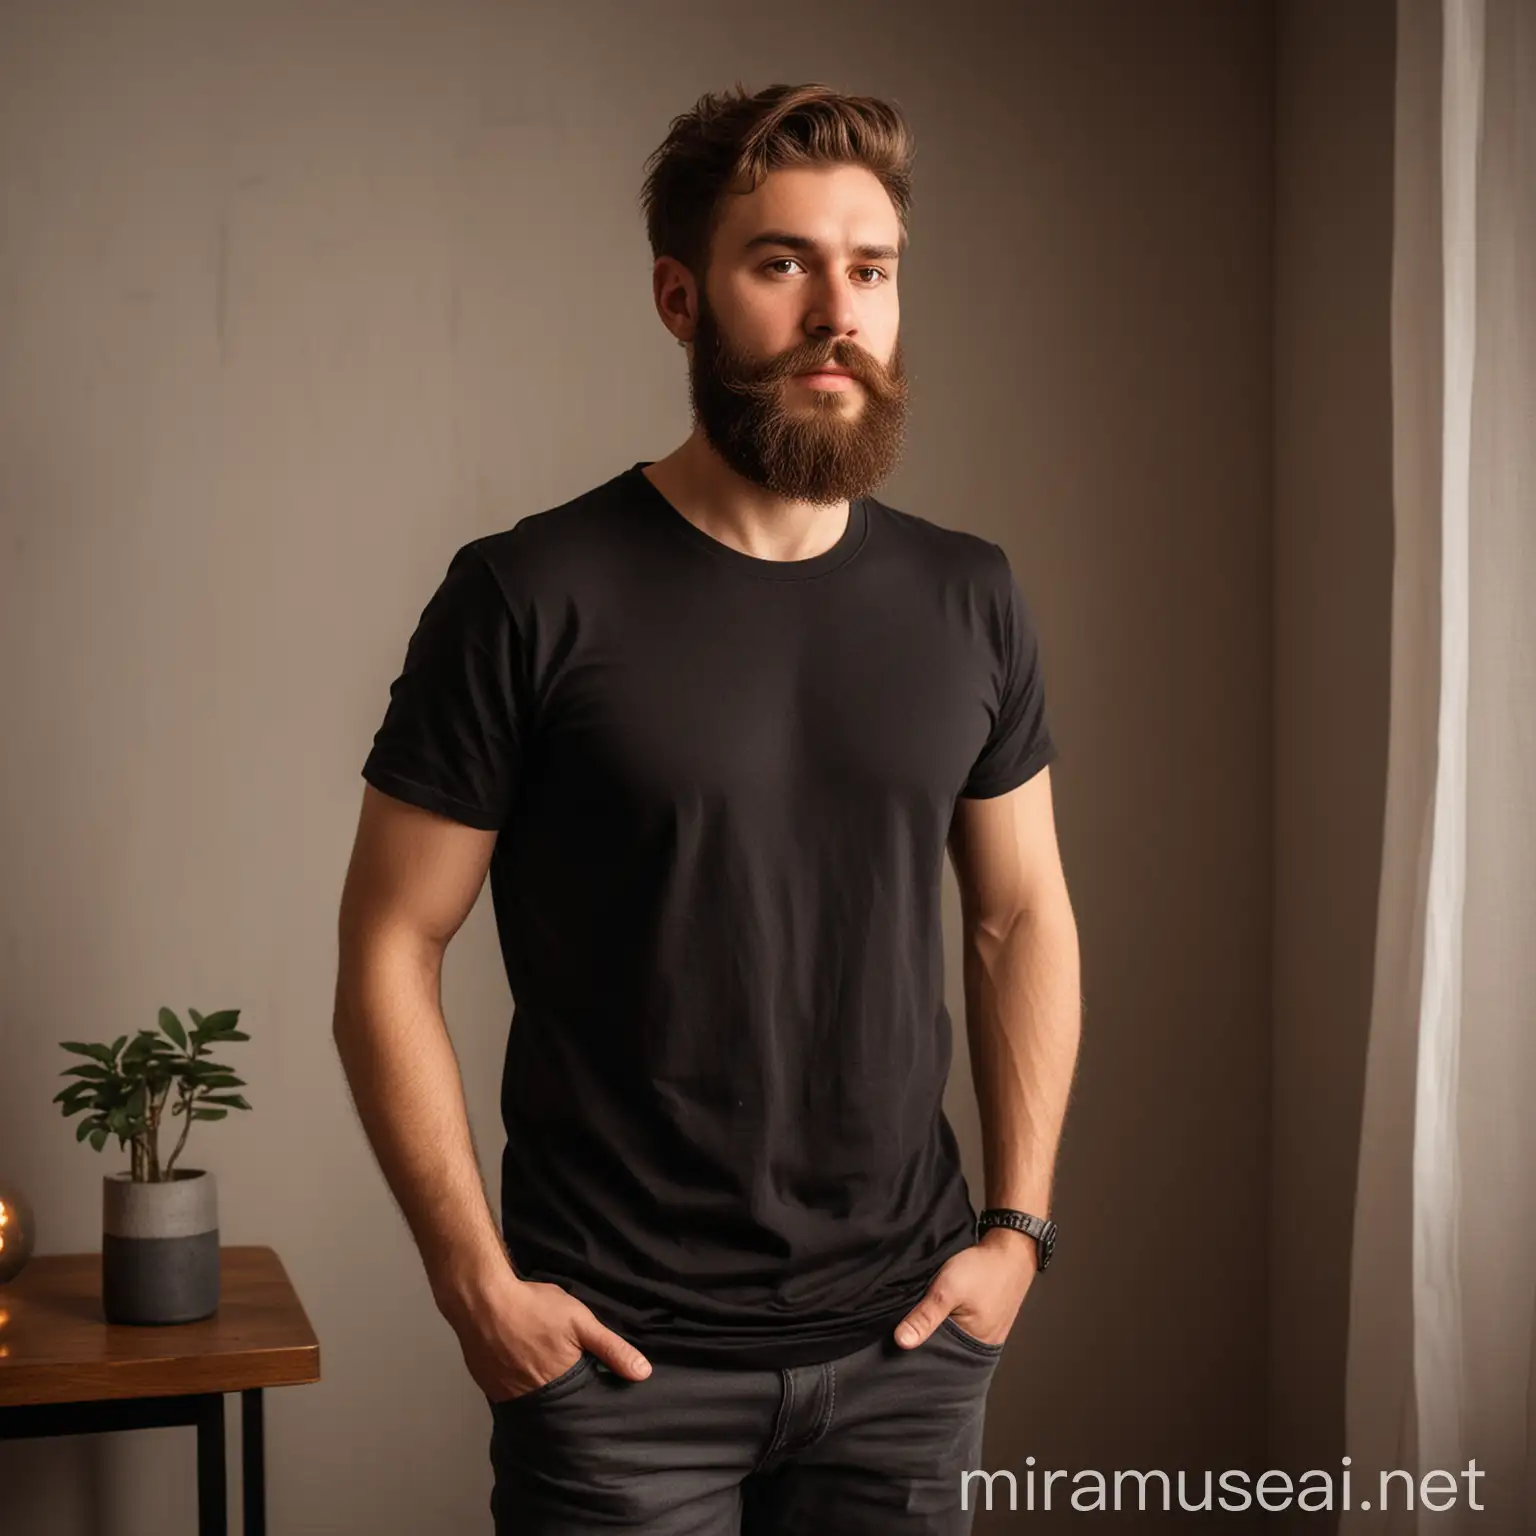 Warmly Lit Room Portrait of a Bearded Man in Black TShirt